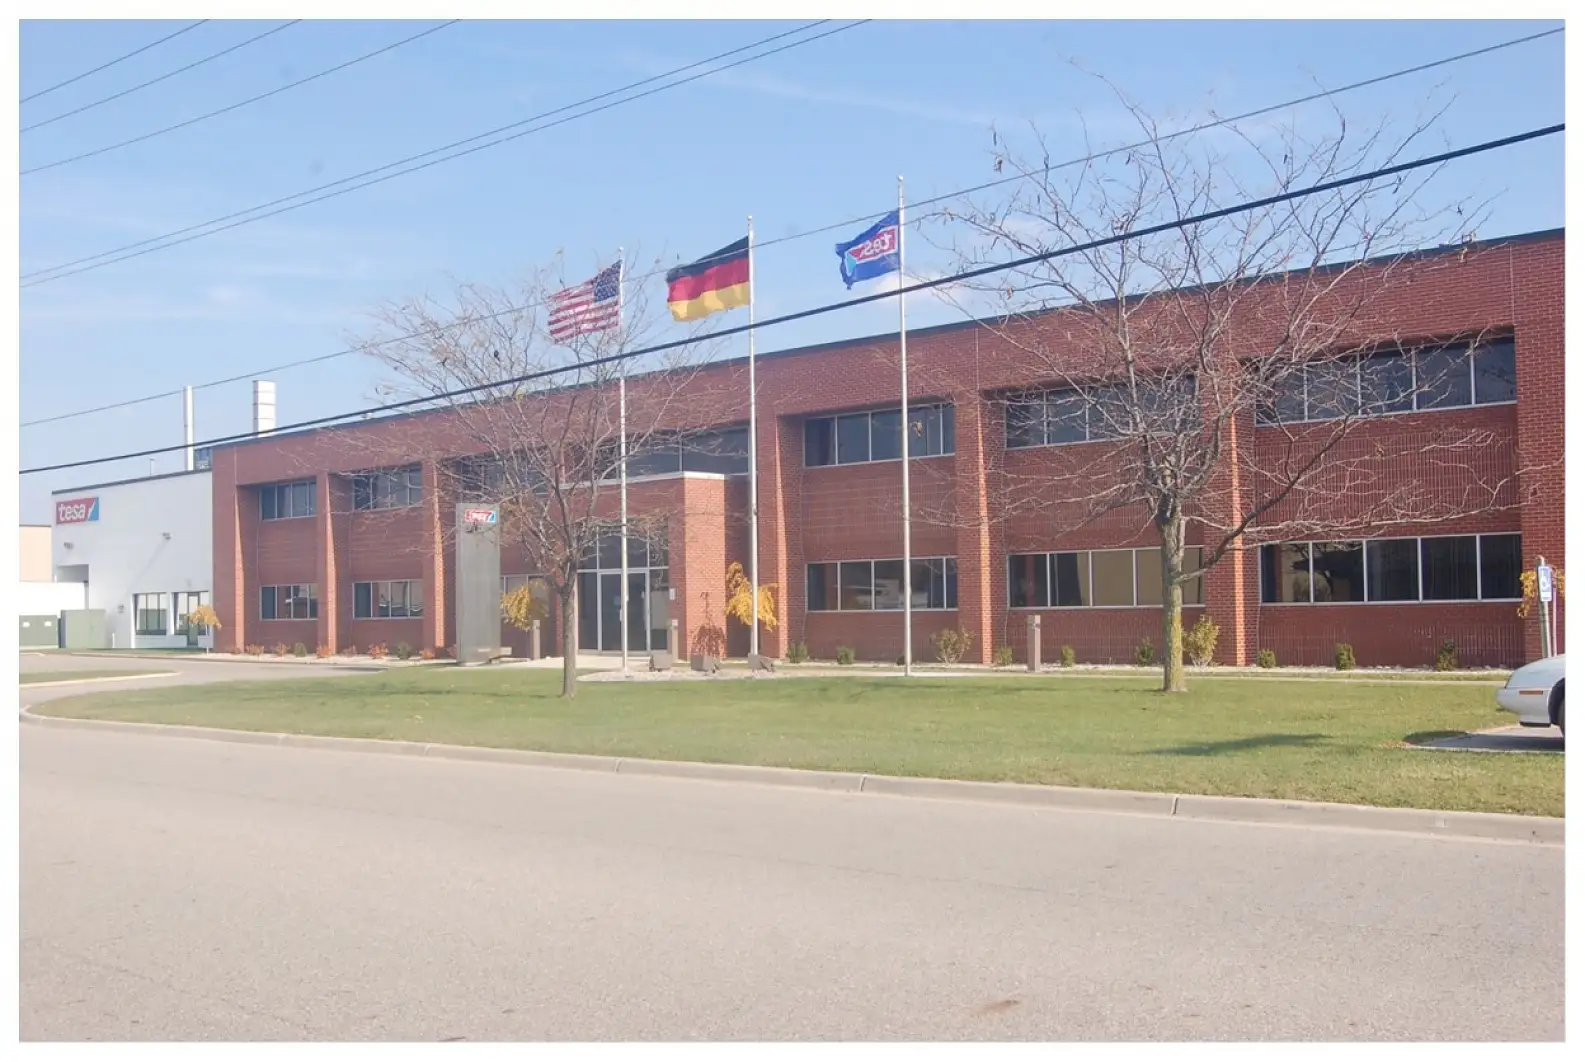 Bendrovės tesa gamykla Spartoje, Mičigane, JAV